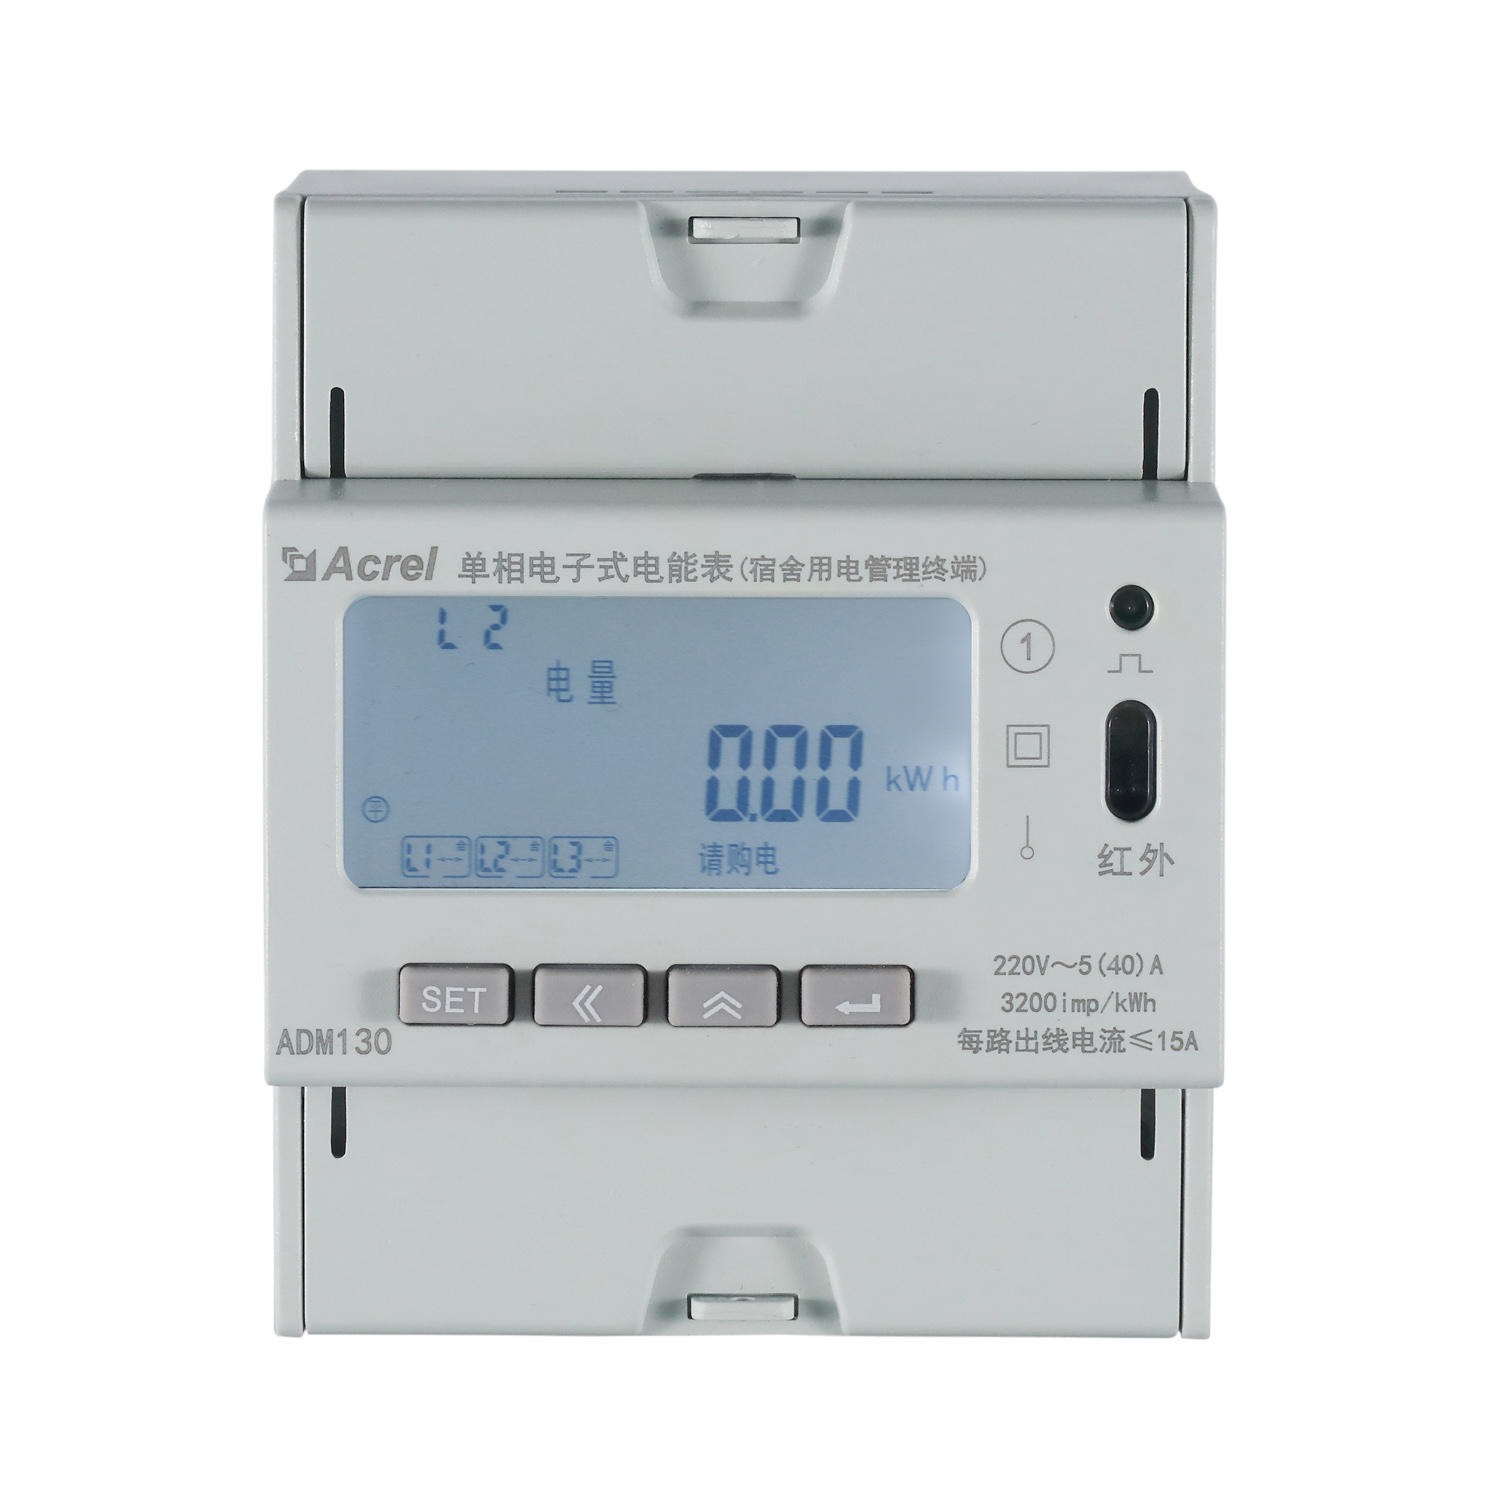 预付费控制 负载控制 时间控制 ADM130 宿舍公寓用电终端仪表图片